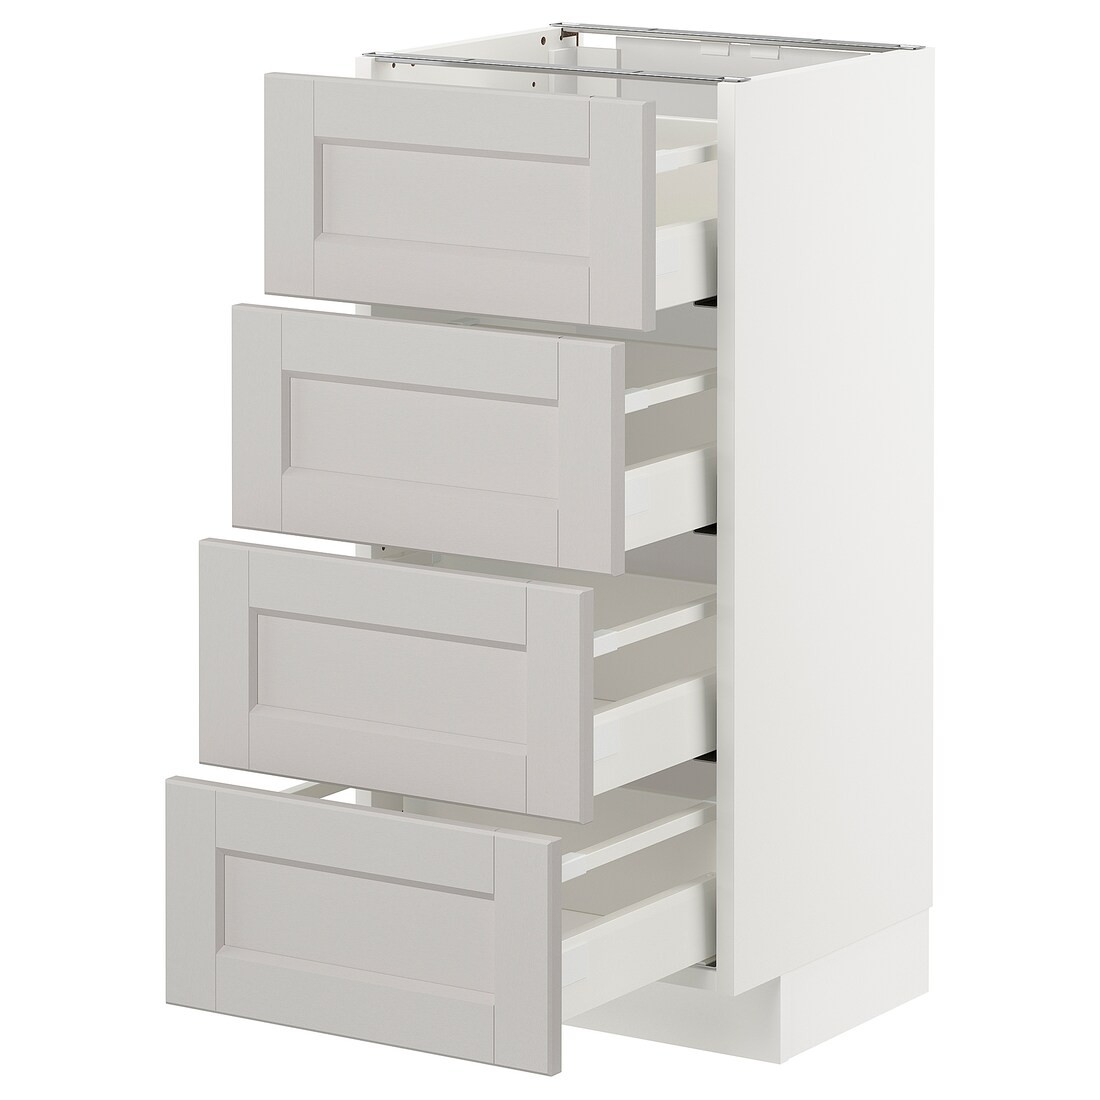 IKEA METOD МЕТОД / MAXIMERA МАКСИМЕРА Напольный шкаф с ящиками, белый / Lerhyttan светло-серый, 40x37 см 79274389 792.743.89